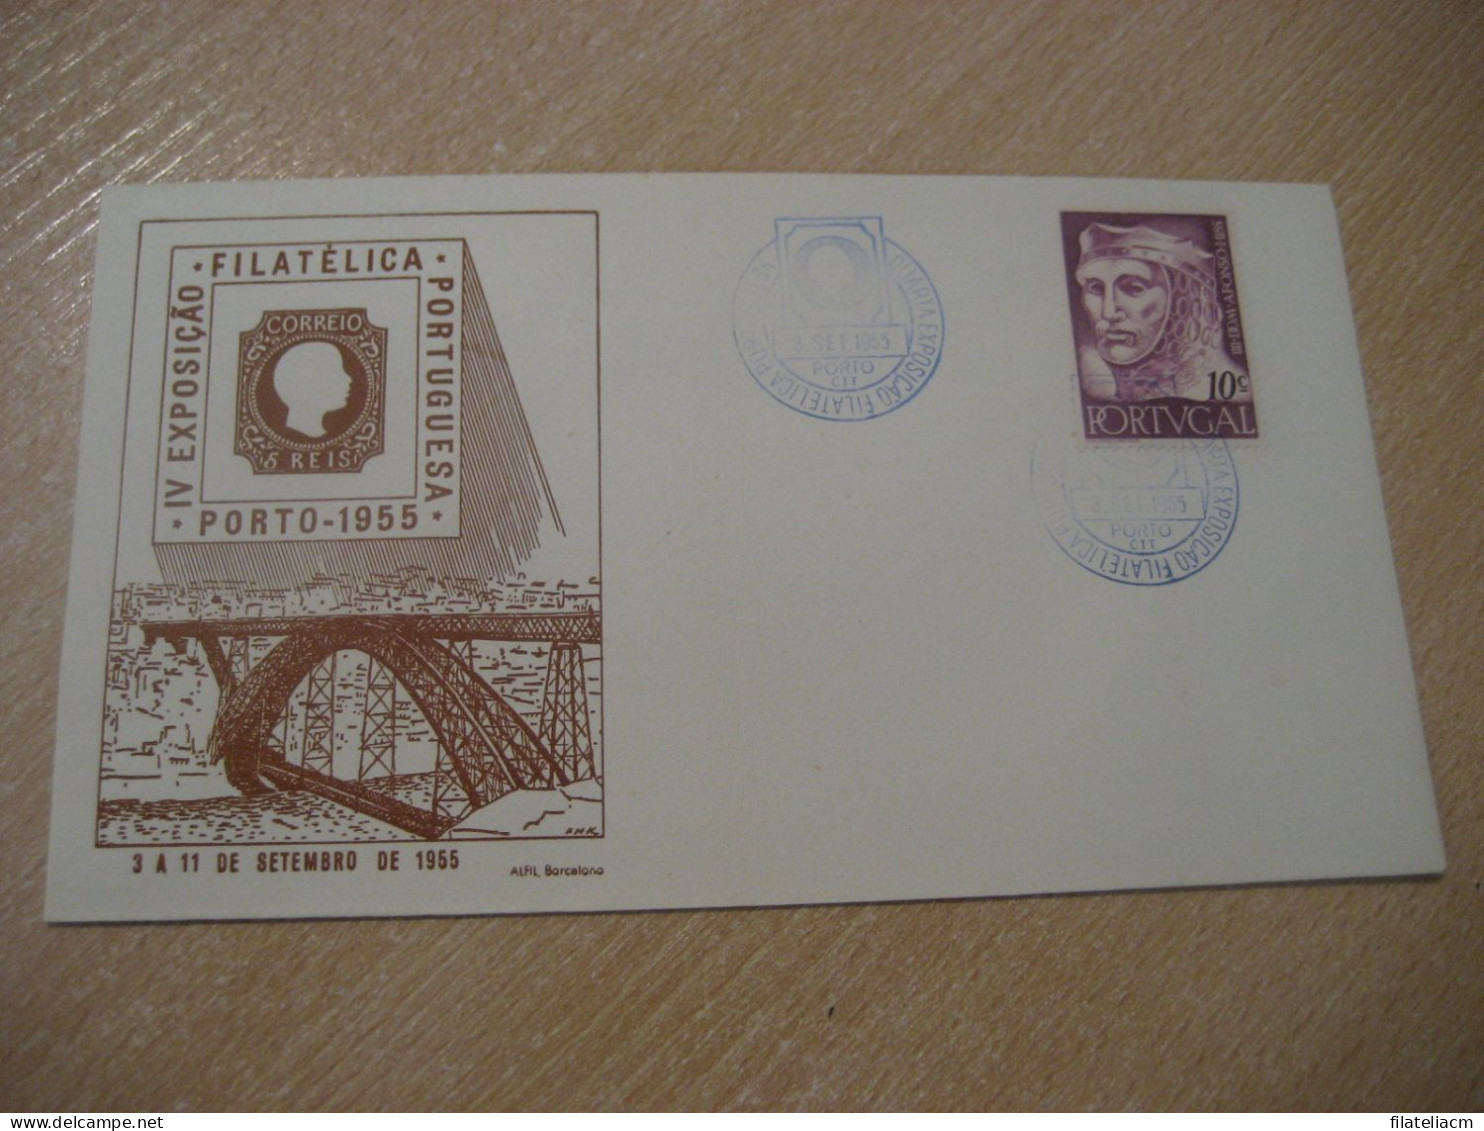 PORTO 1955 Expo Filatelica Stamp Bridge Cancel Cover PORTUGAL - Cartas & Documentos